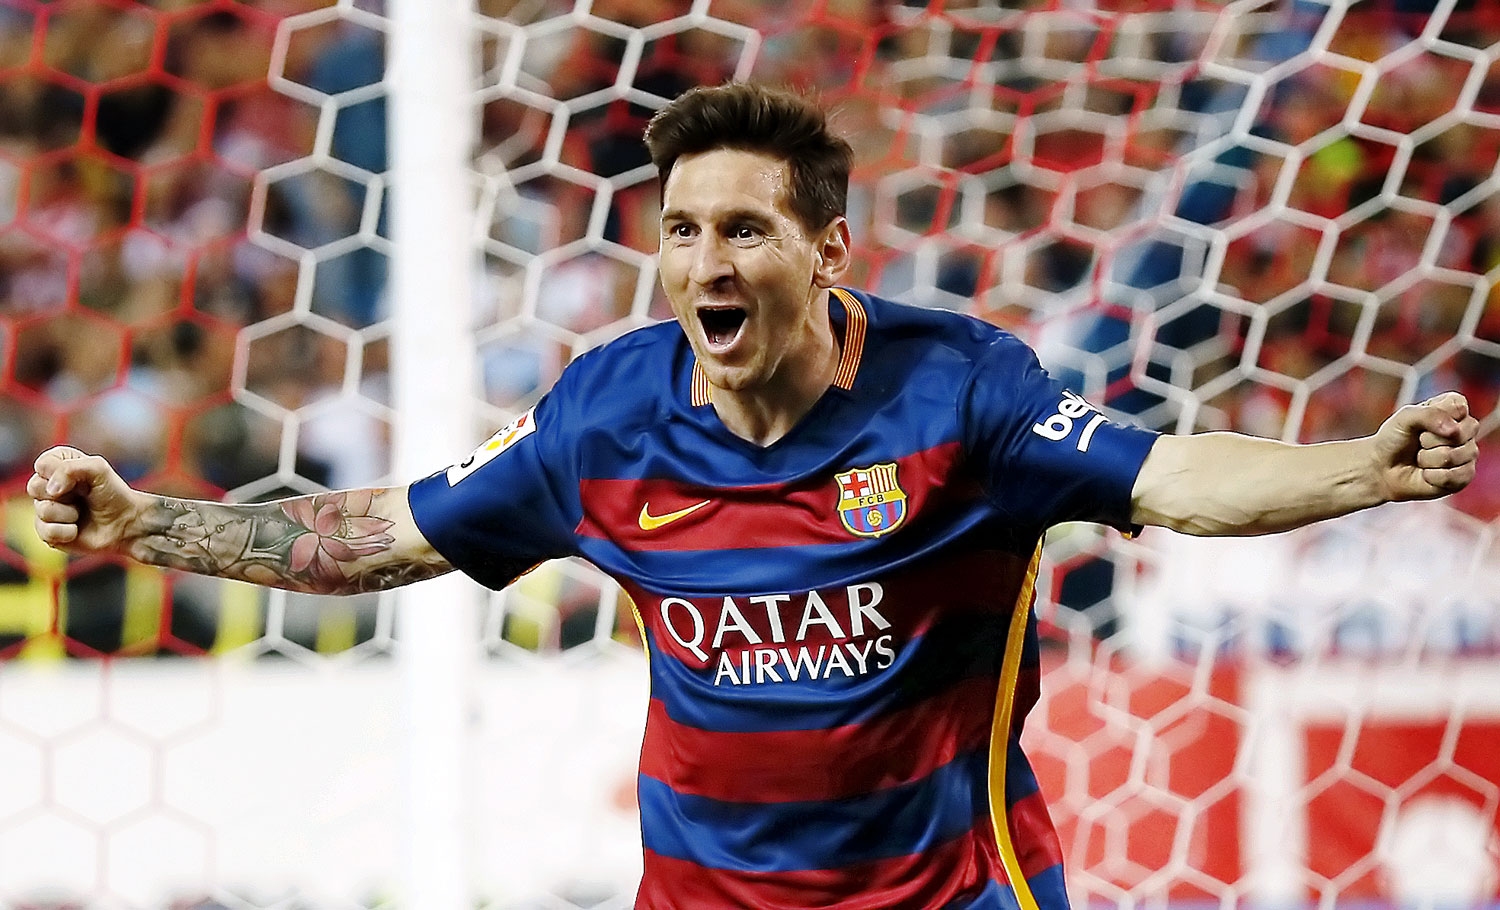 A századik BL-mérkőzésére készülő Lionel Messi így örült a gólja után az Atletico Madrid elleni meccsen